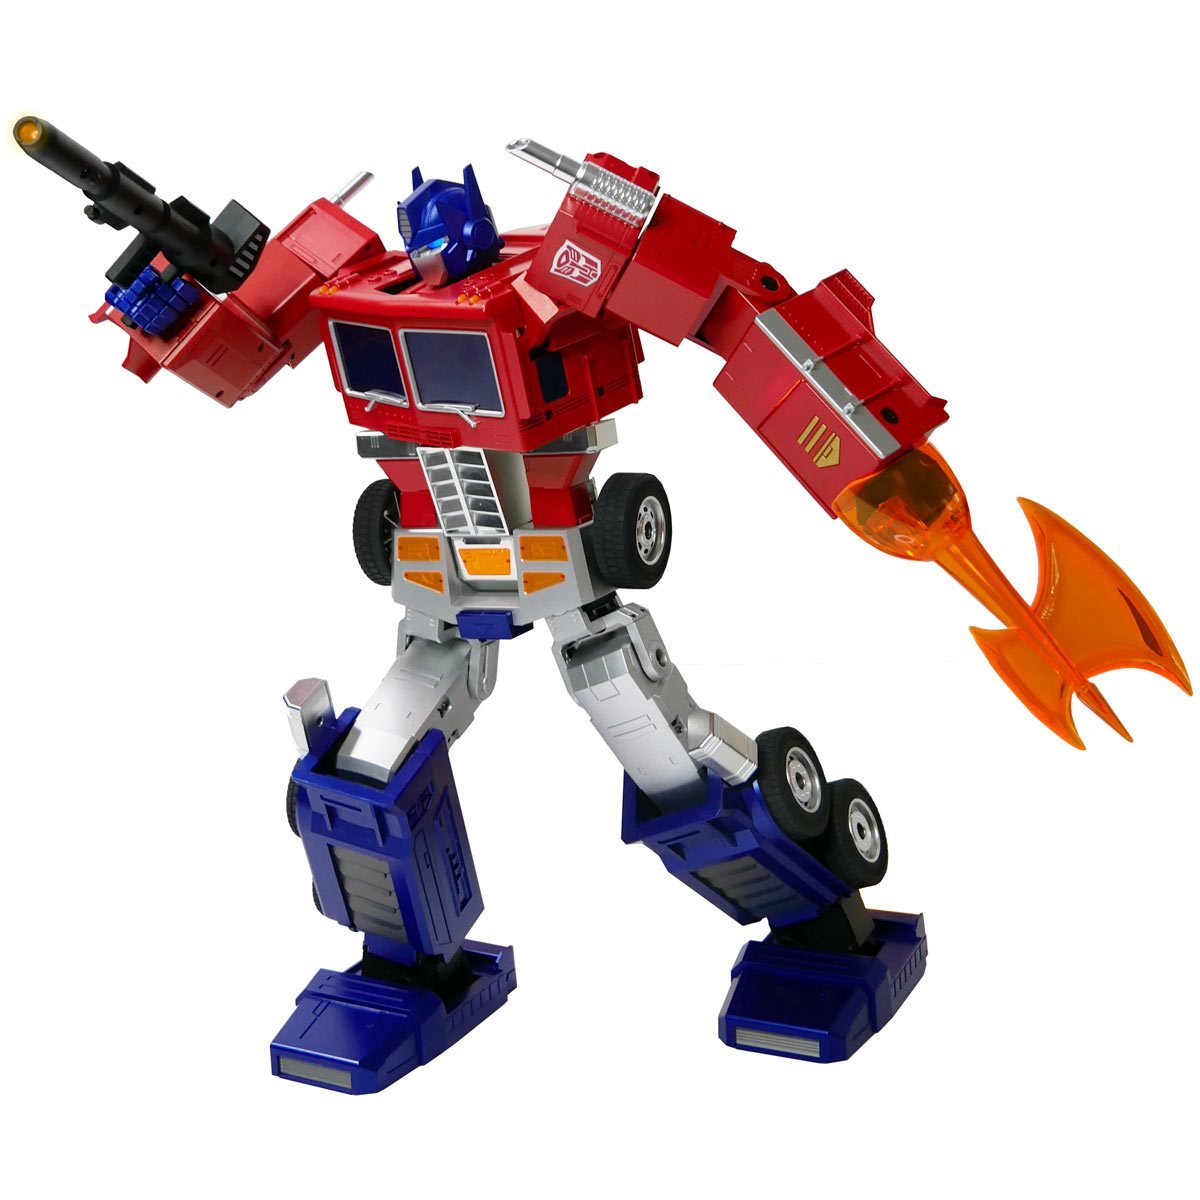 Transformers - Auto-Converting Robot - Optimus Prime Elite